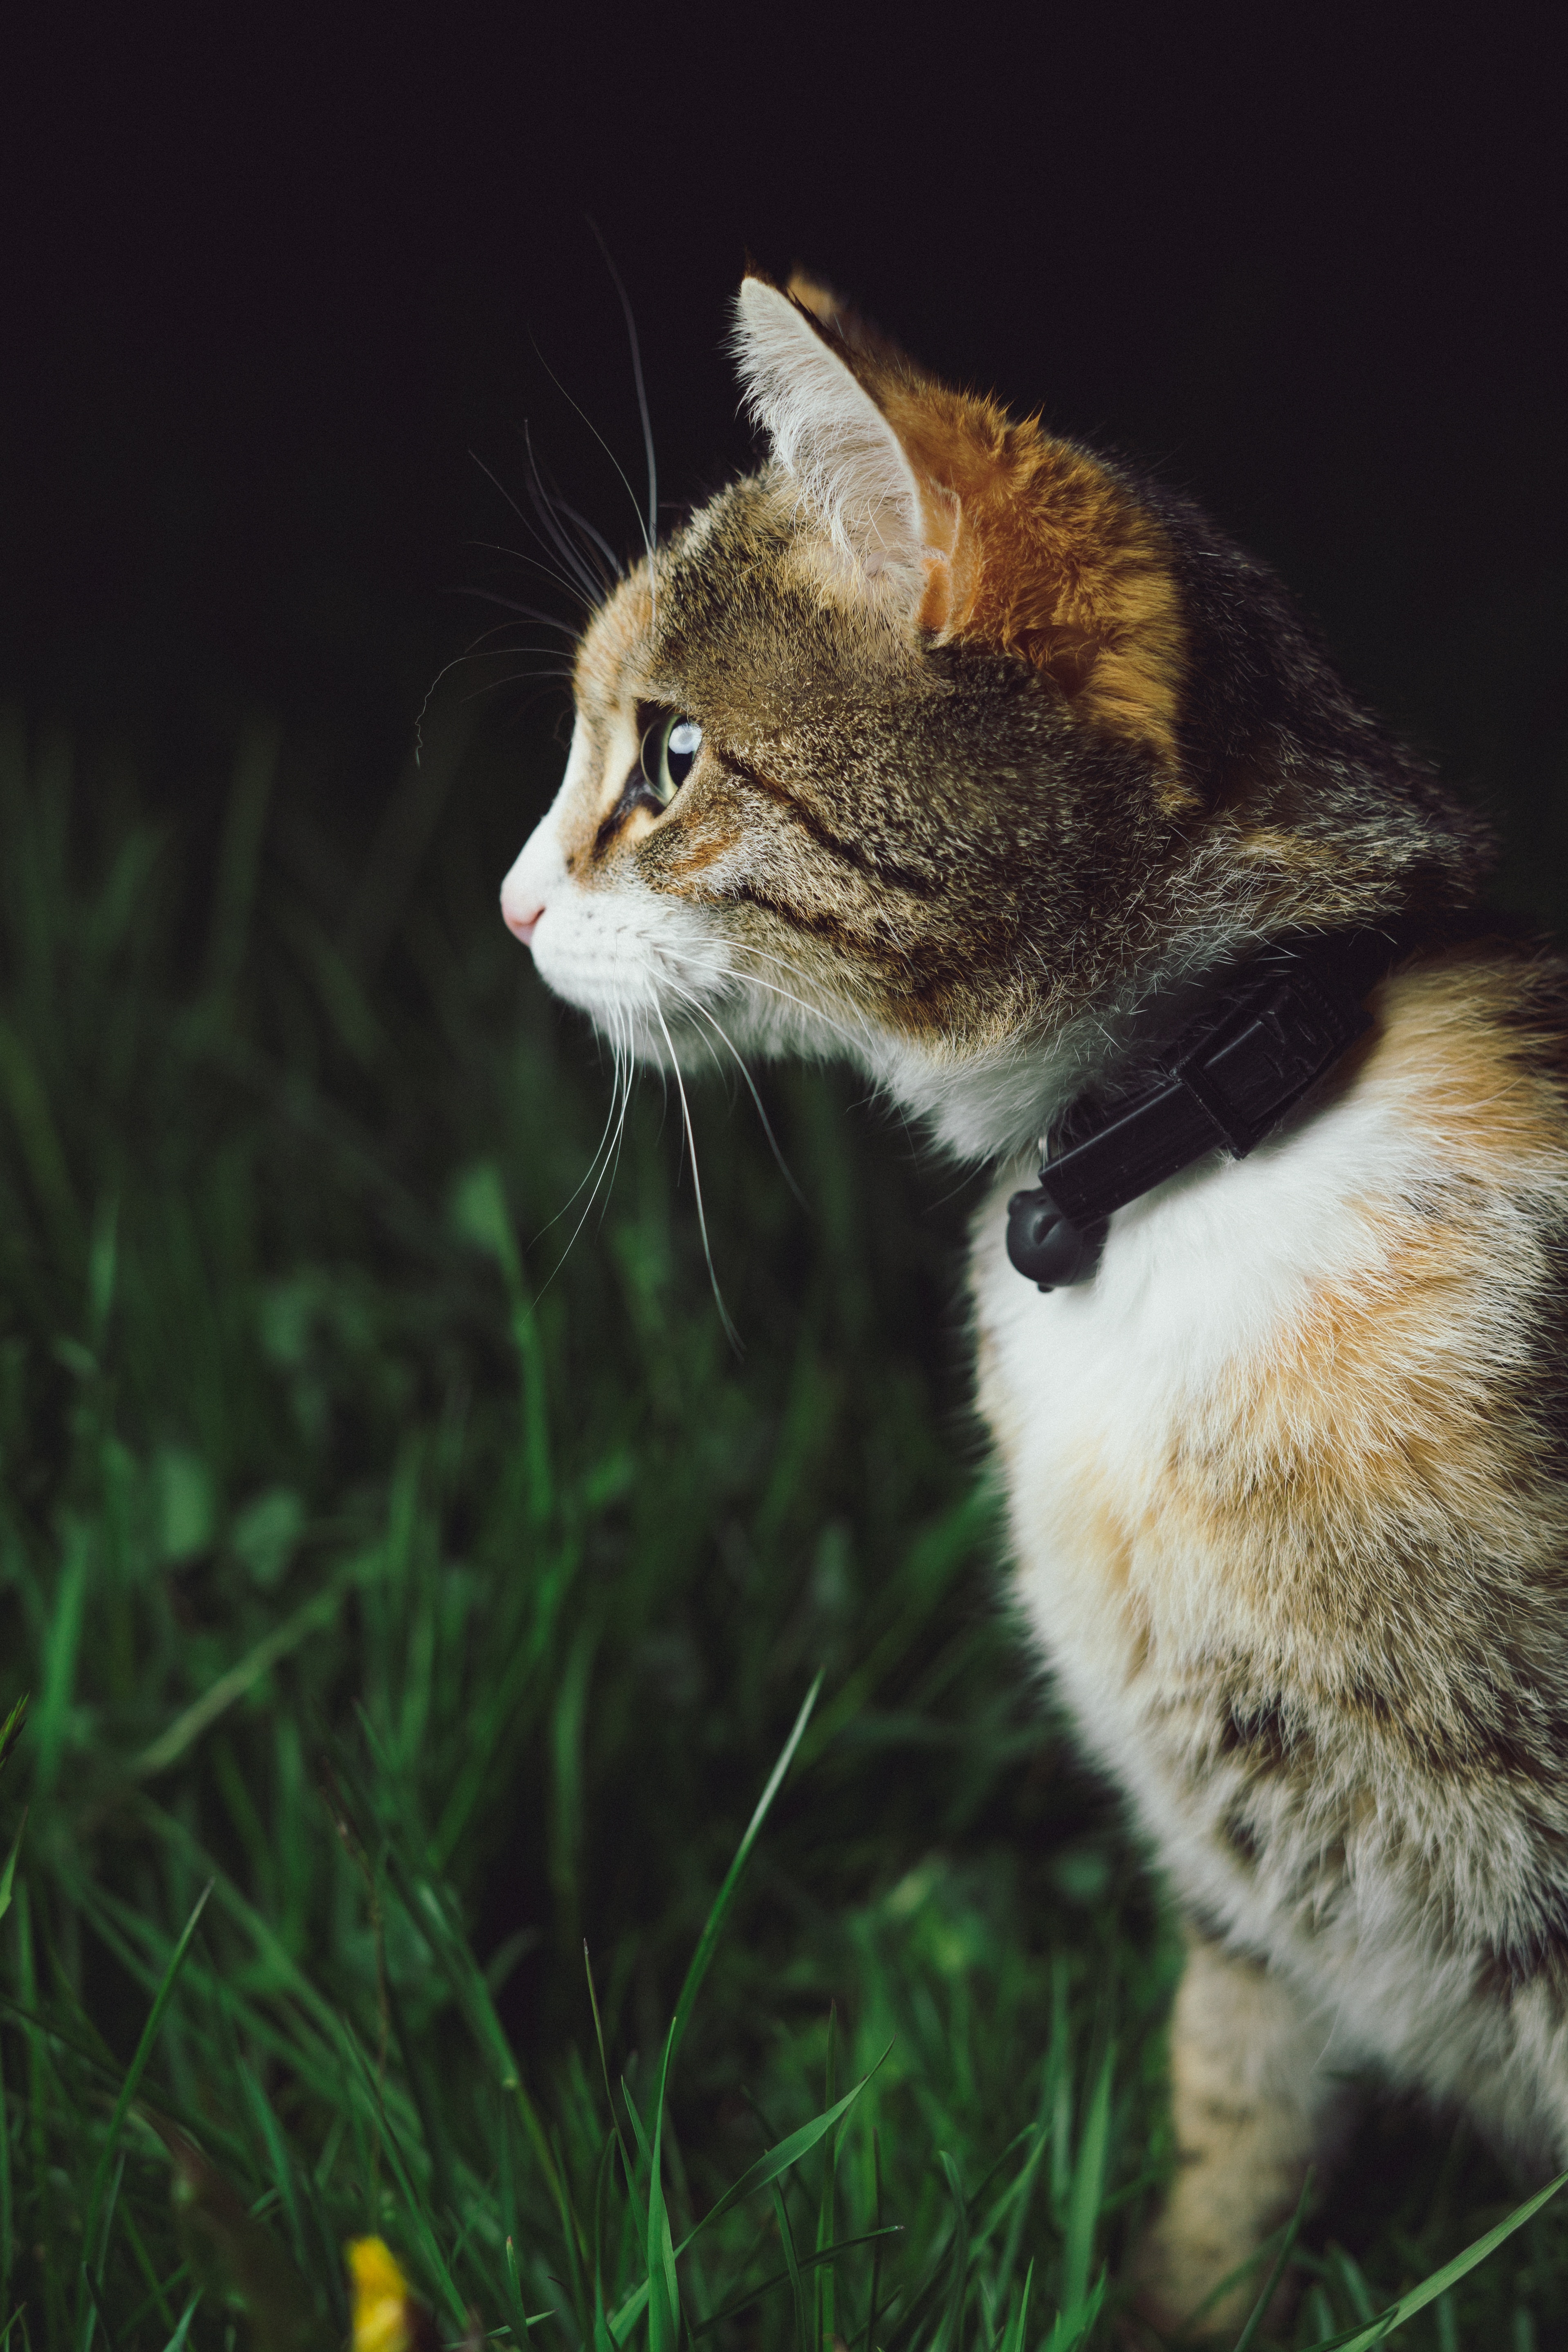 Junge Katze im Gras. Es hat einen Kragen mit einer Glocke. Glocken sind eine Quelle der Frustration für Katzen, sie stören sie, und das Halsband selbst an einer Katze draußen kann dazu führen, dass die Katze daran hängt und erstickt.